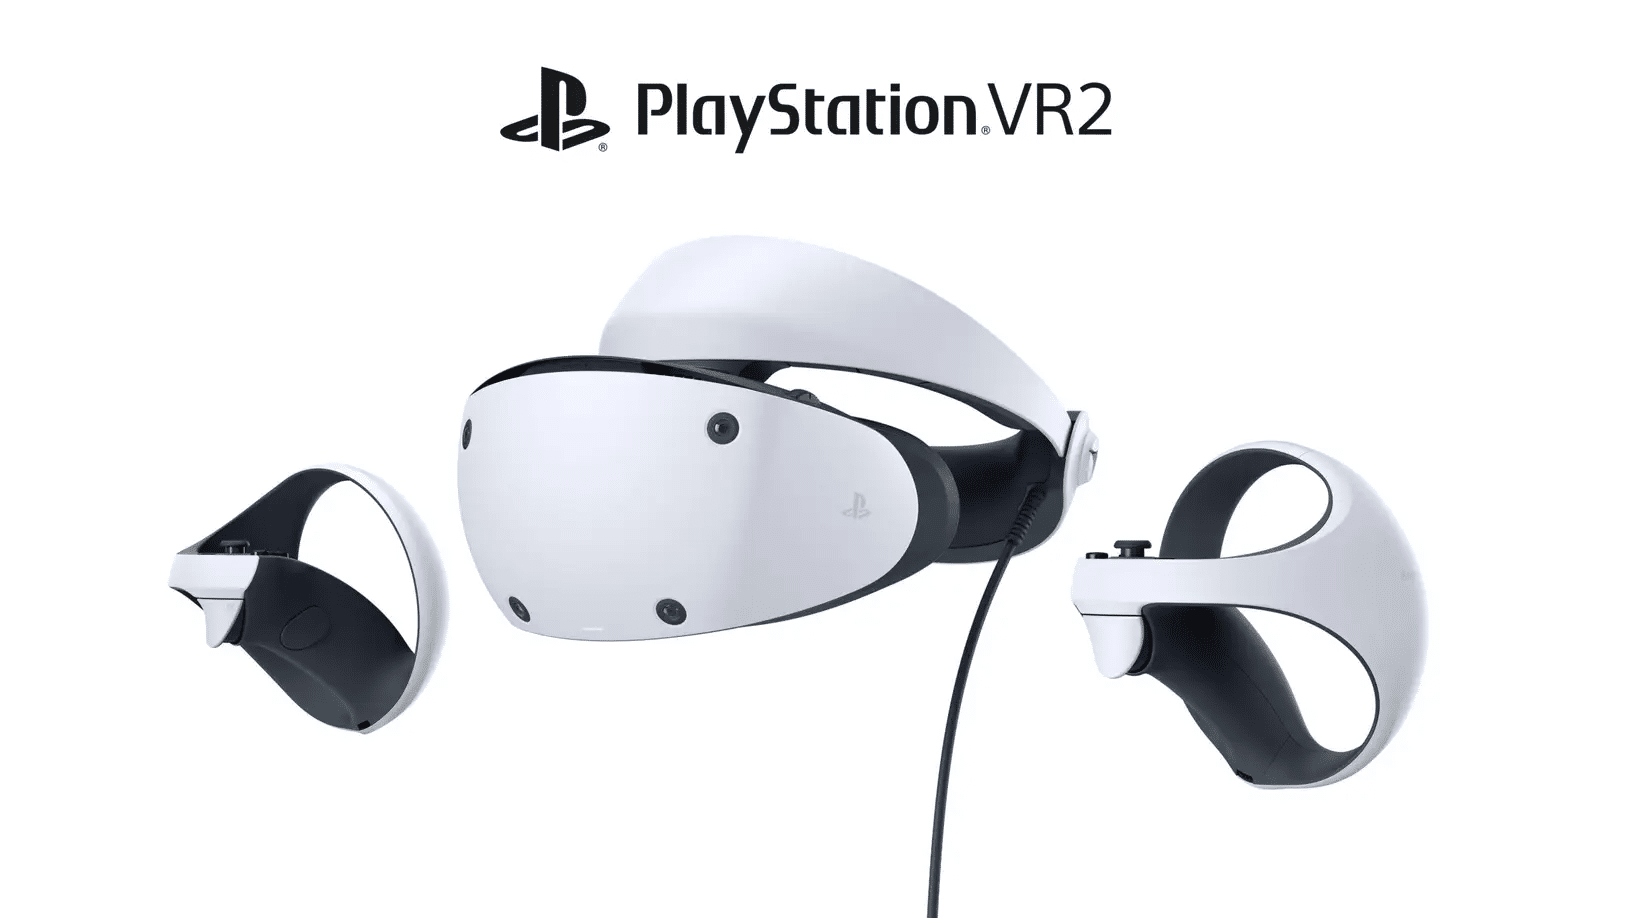 PSVR 2 vs PC VR Specs Comparison - Index, Reverb G2, Vive Pro 2